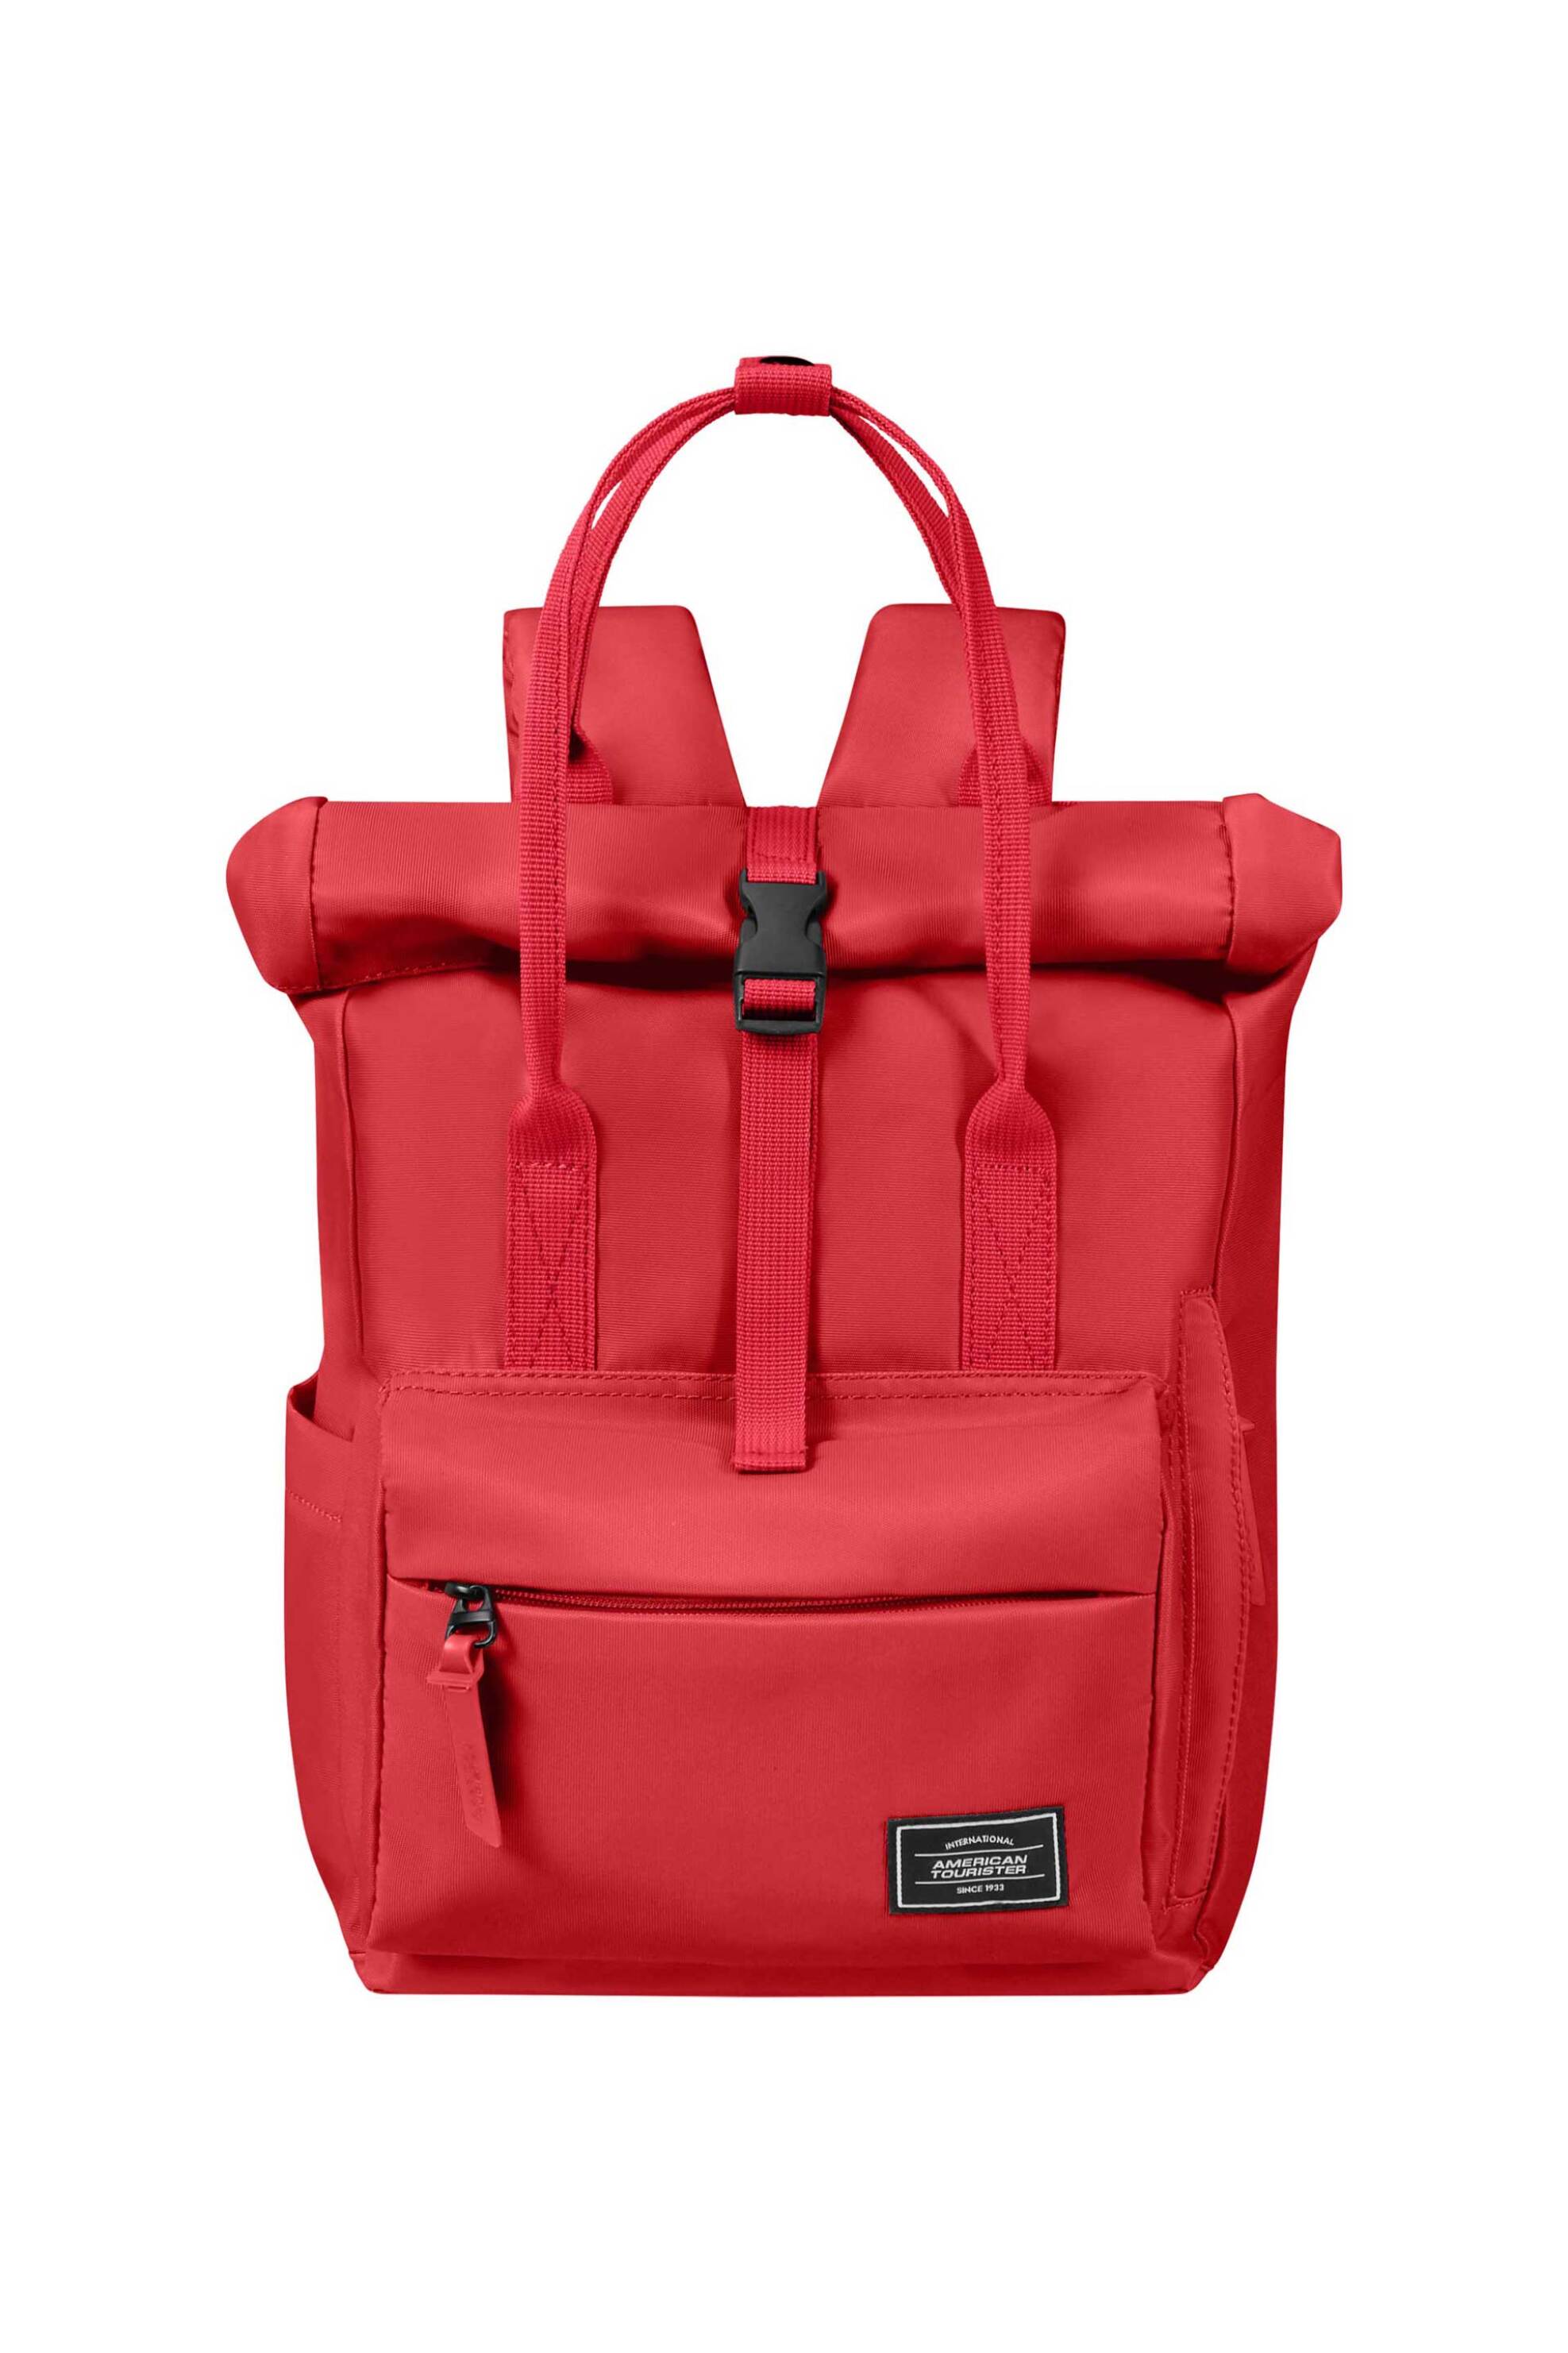 Ανδρική Μόδα > Ανδρικές Τσάντες > Ανδρικά Σακίδια & Backpacks American Tourister unisex backpack μονόχρωμο με πολλαπλές θήκες "Urban Groove" 36 x 25 x 20 cm - 143779SM Κόκκινο